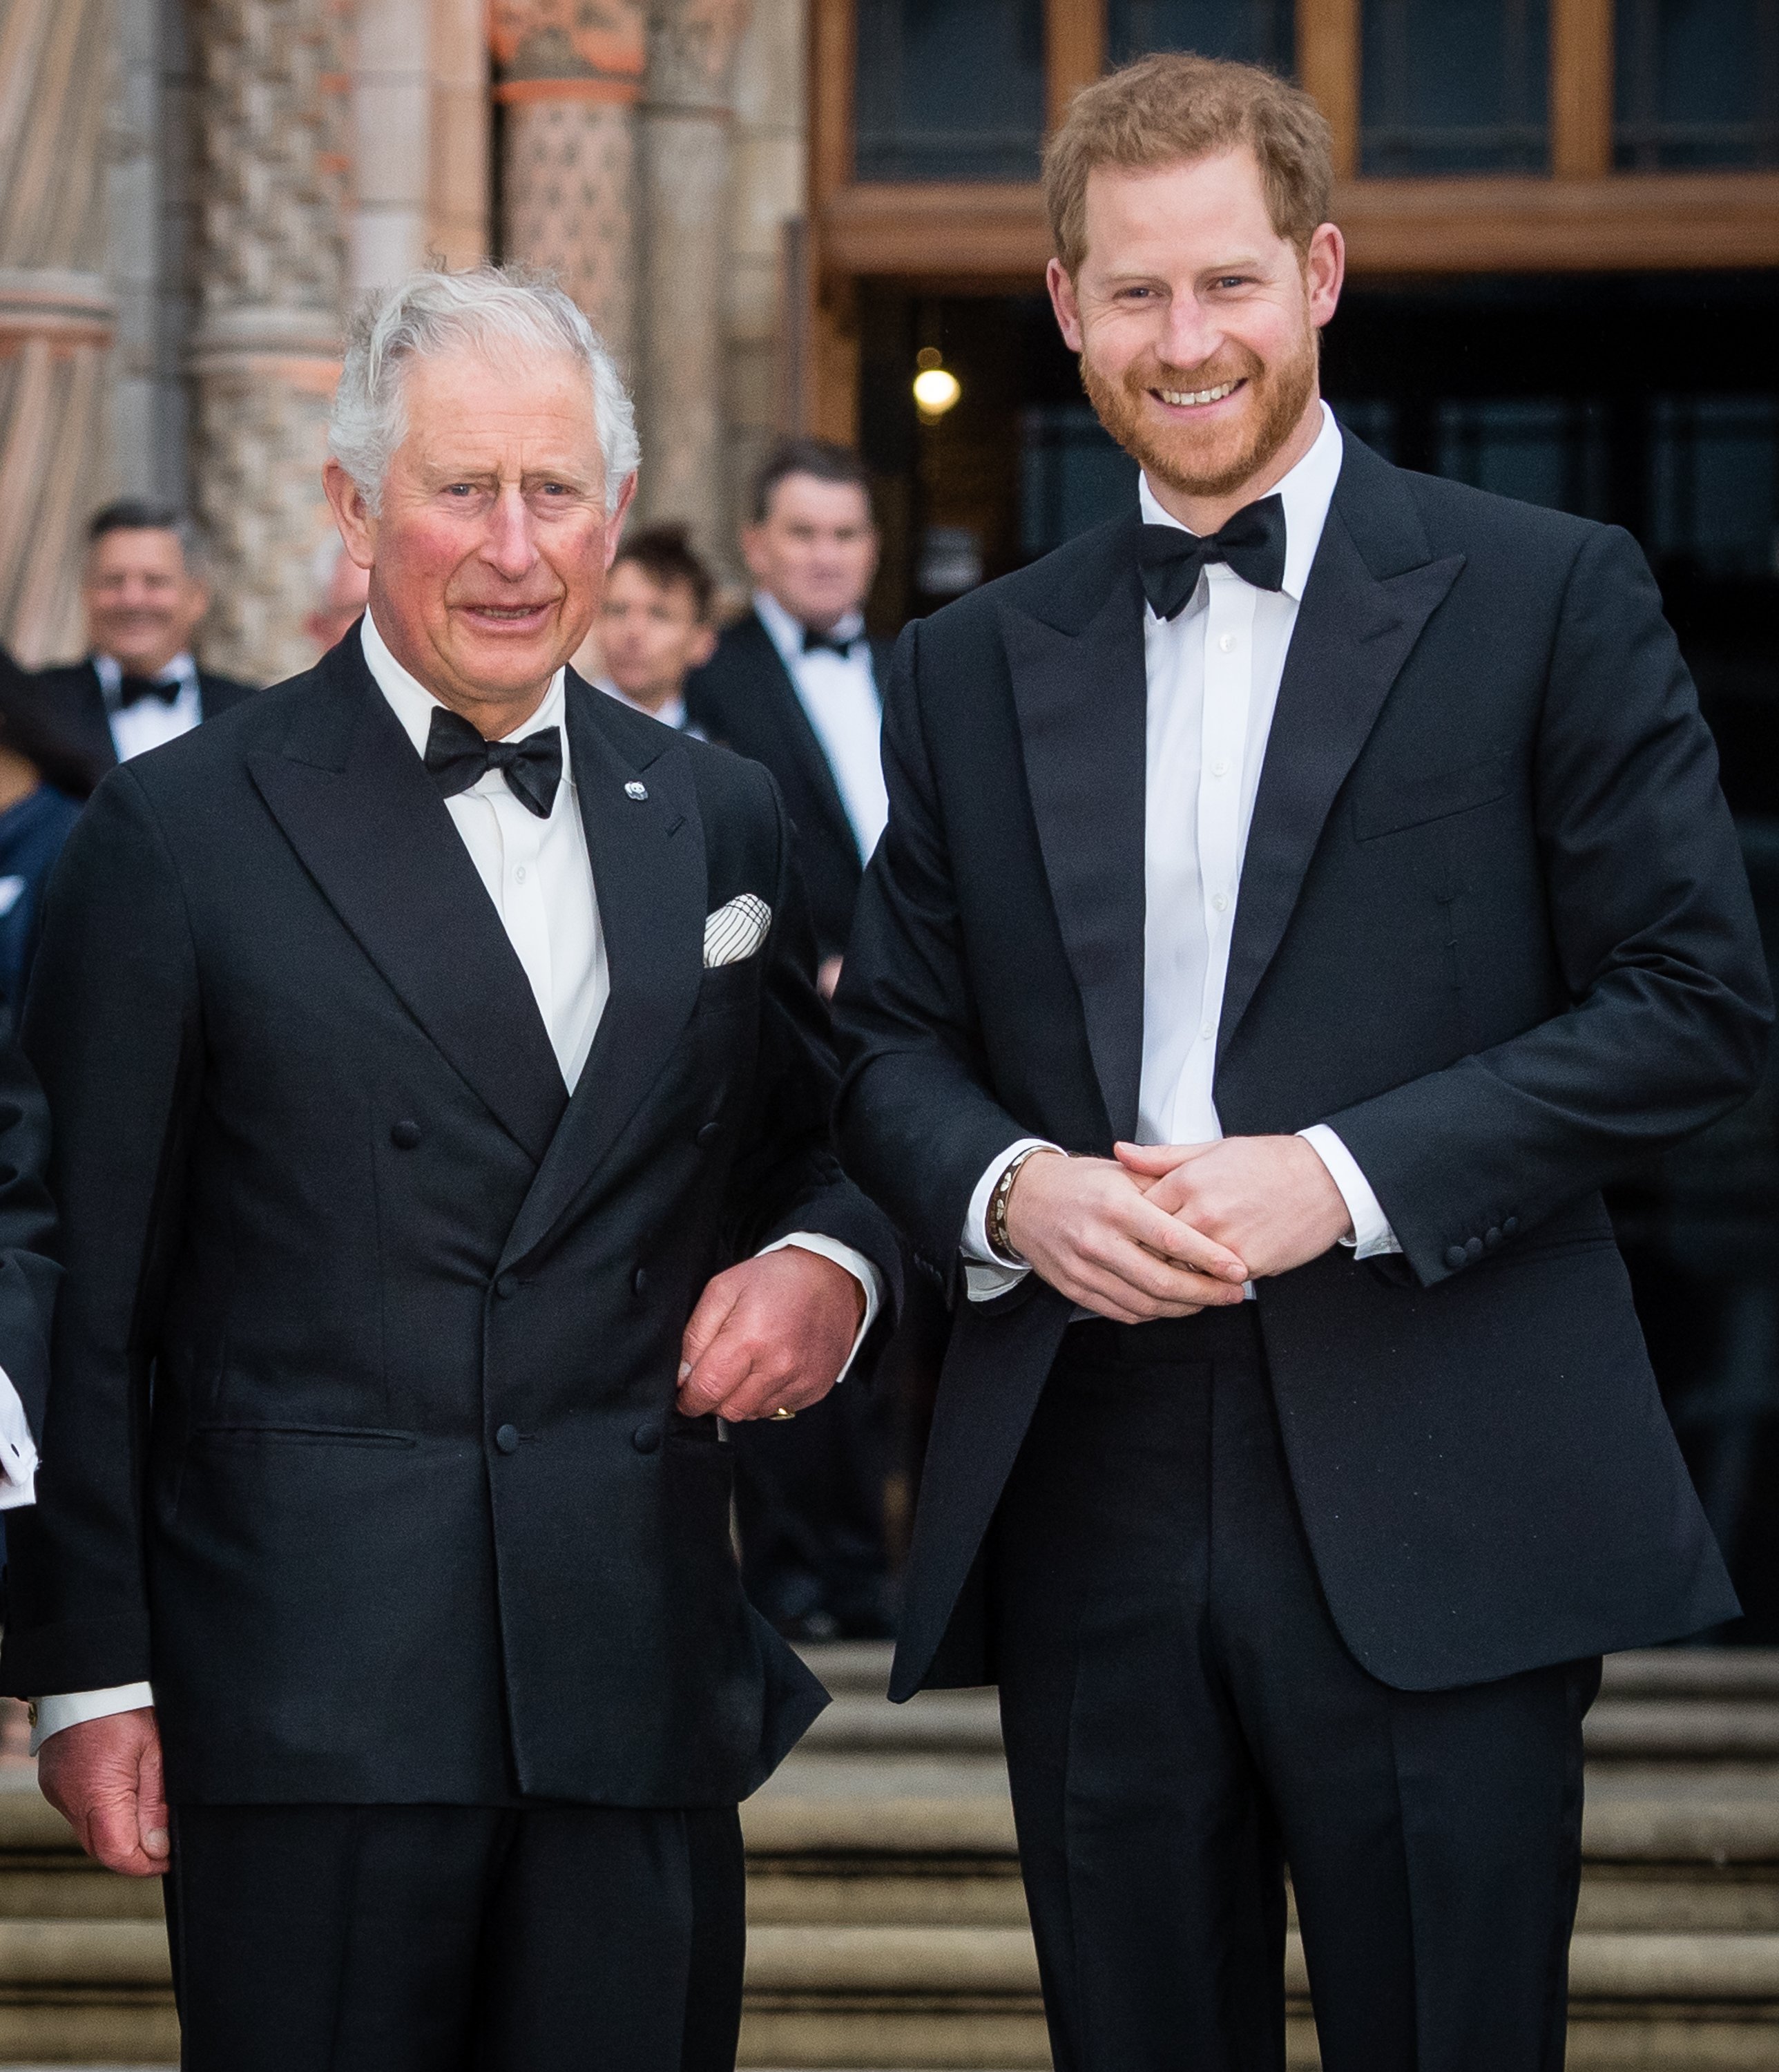 El príncipe Charles y el príncipe Harry, asisten al estreno mundial de "Our Planet" en el Museo de Historia Natural el 4 de abril de 2019 en Londres, Inglaterra. | Foto: Getty Images